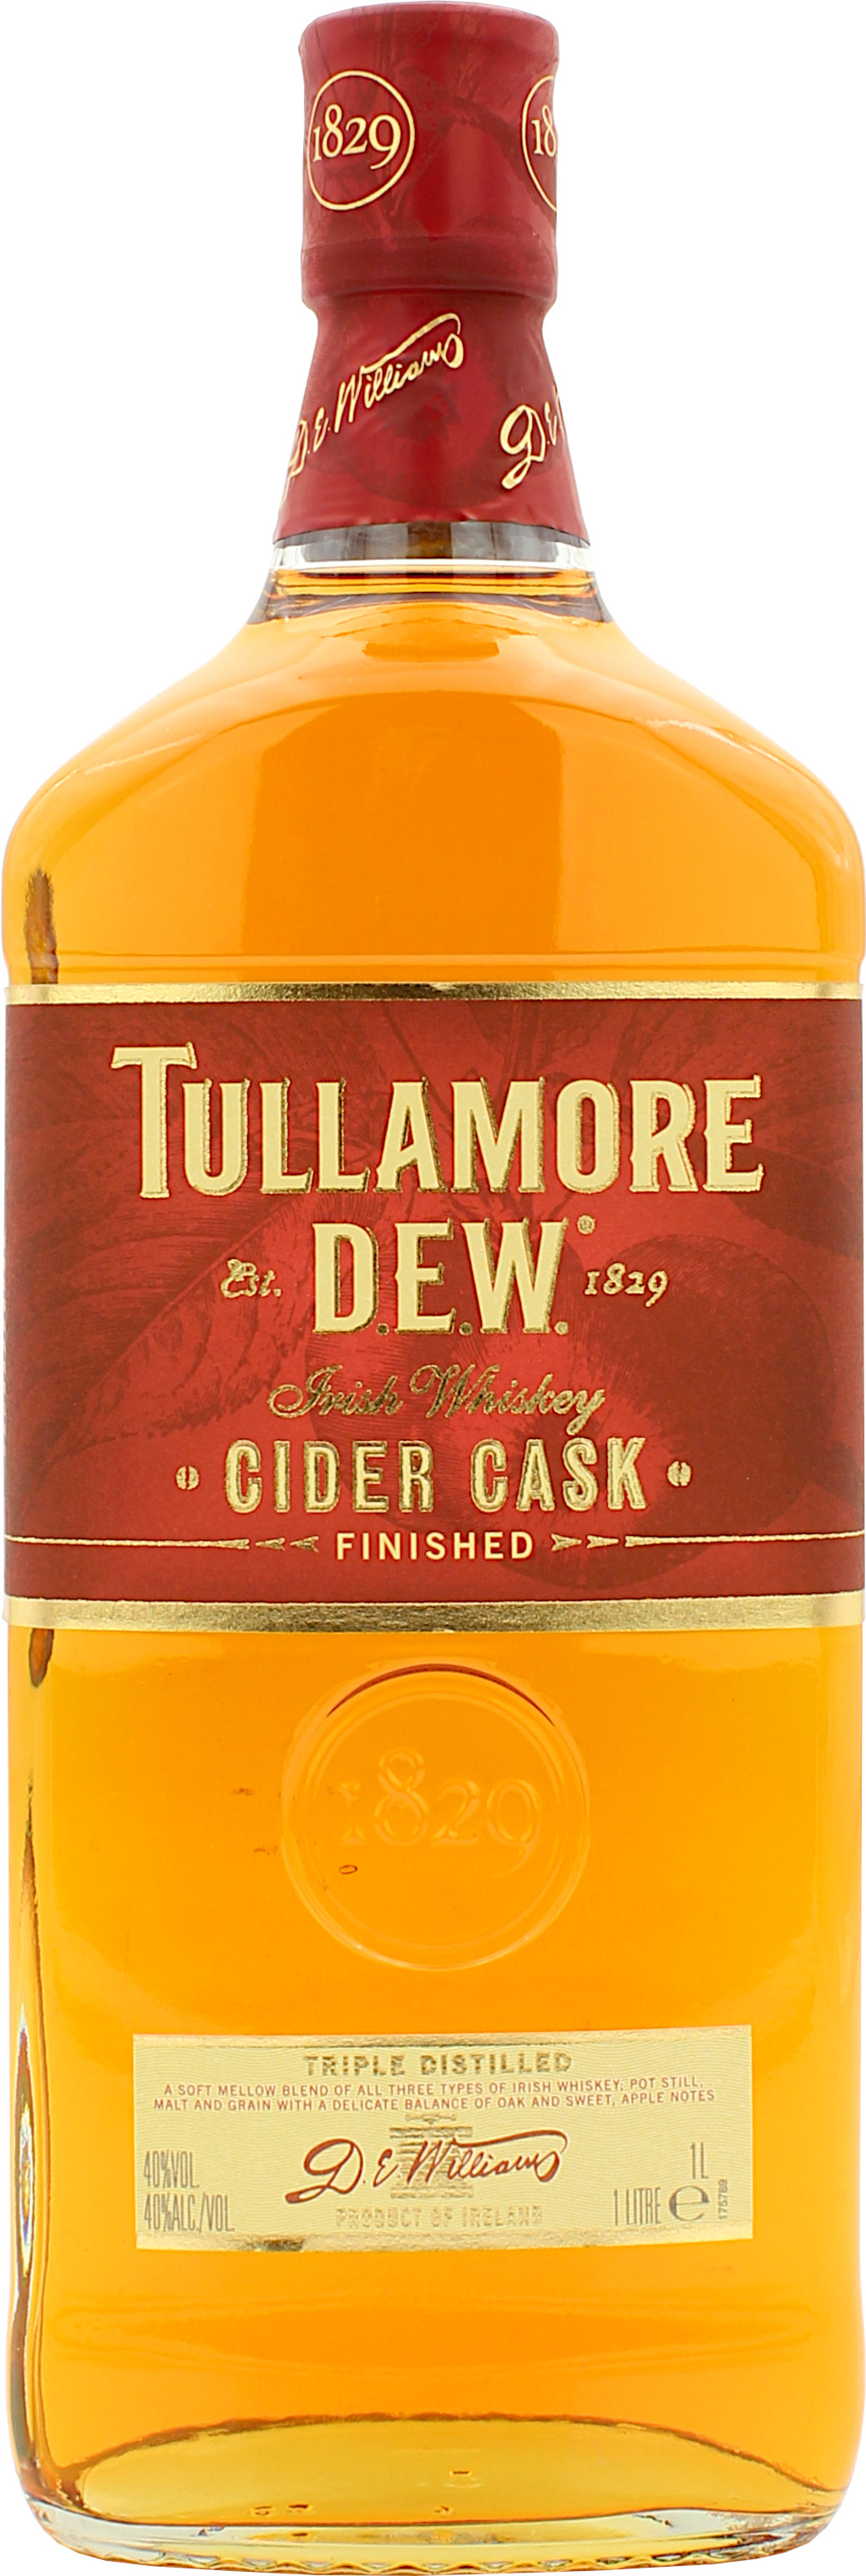 Tullamore Dew Cider Cask Finish 40.0% 1 Liter